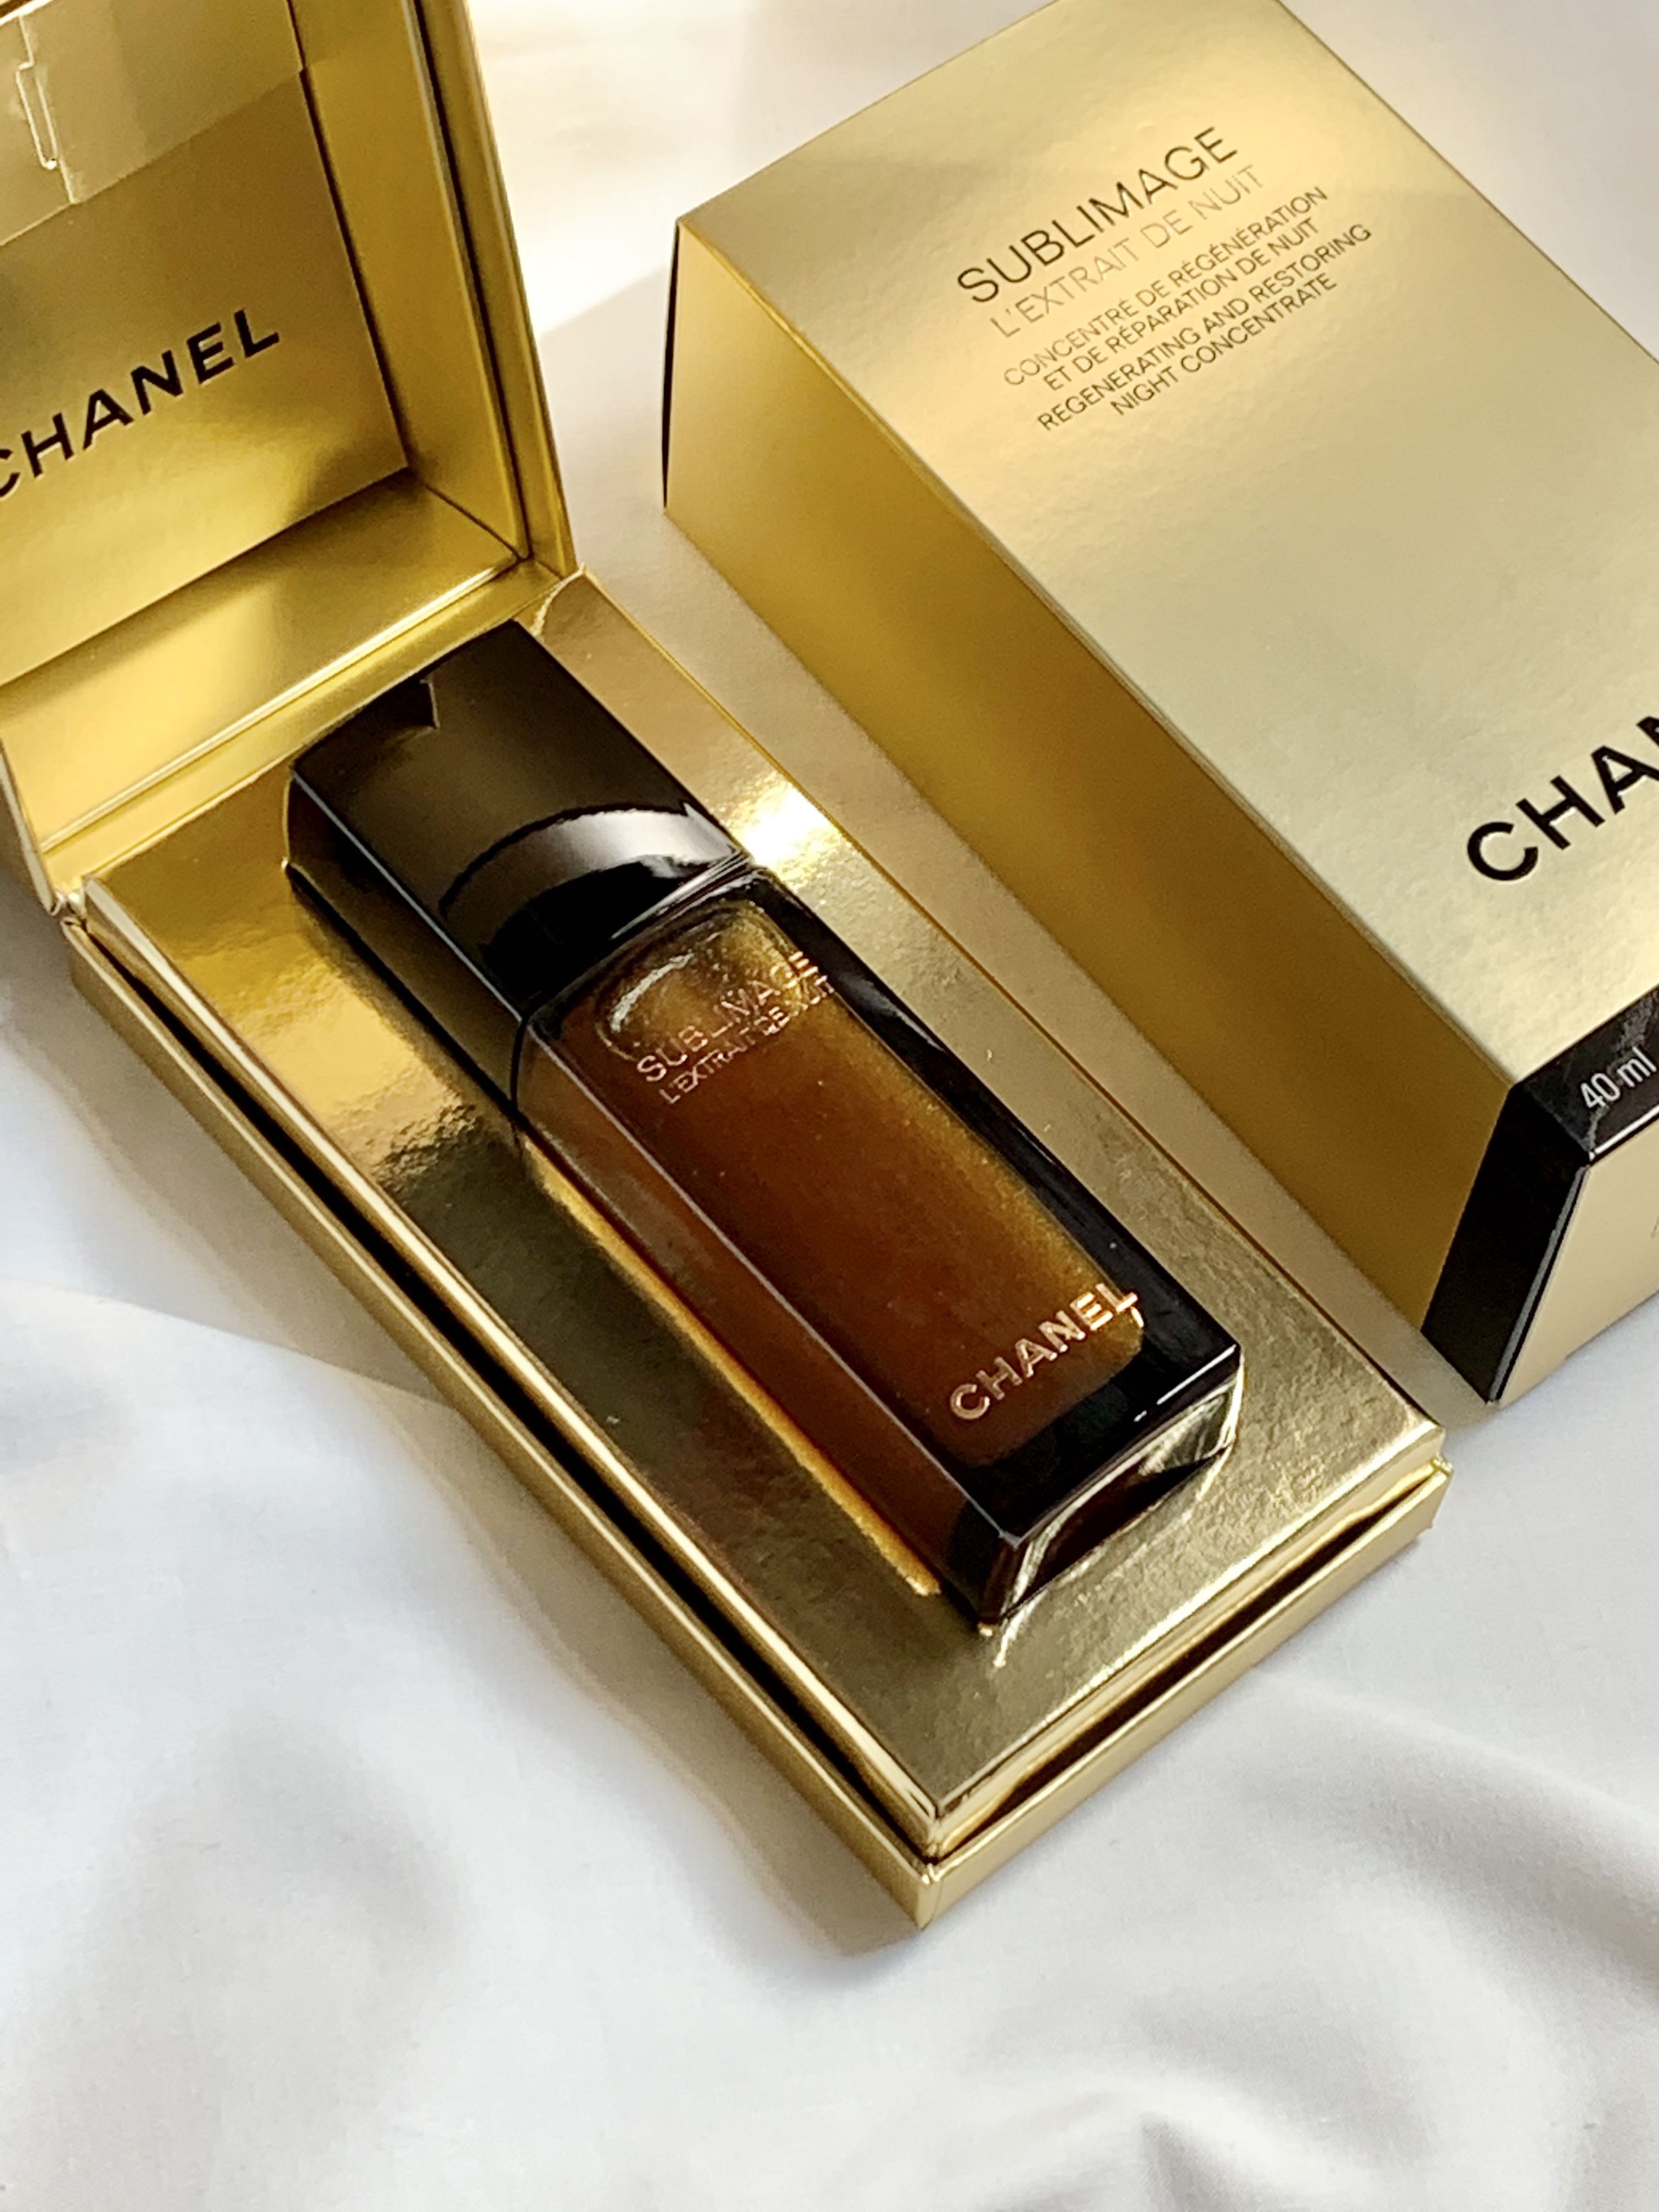 Chanel Sublimage L'Extrait De Nuit Revitalizing Night Concentrate